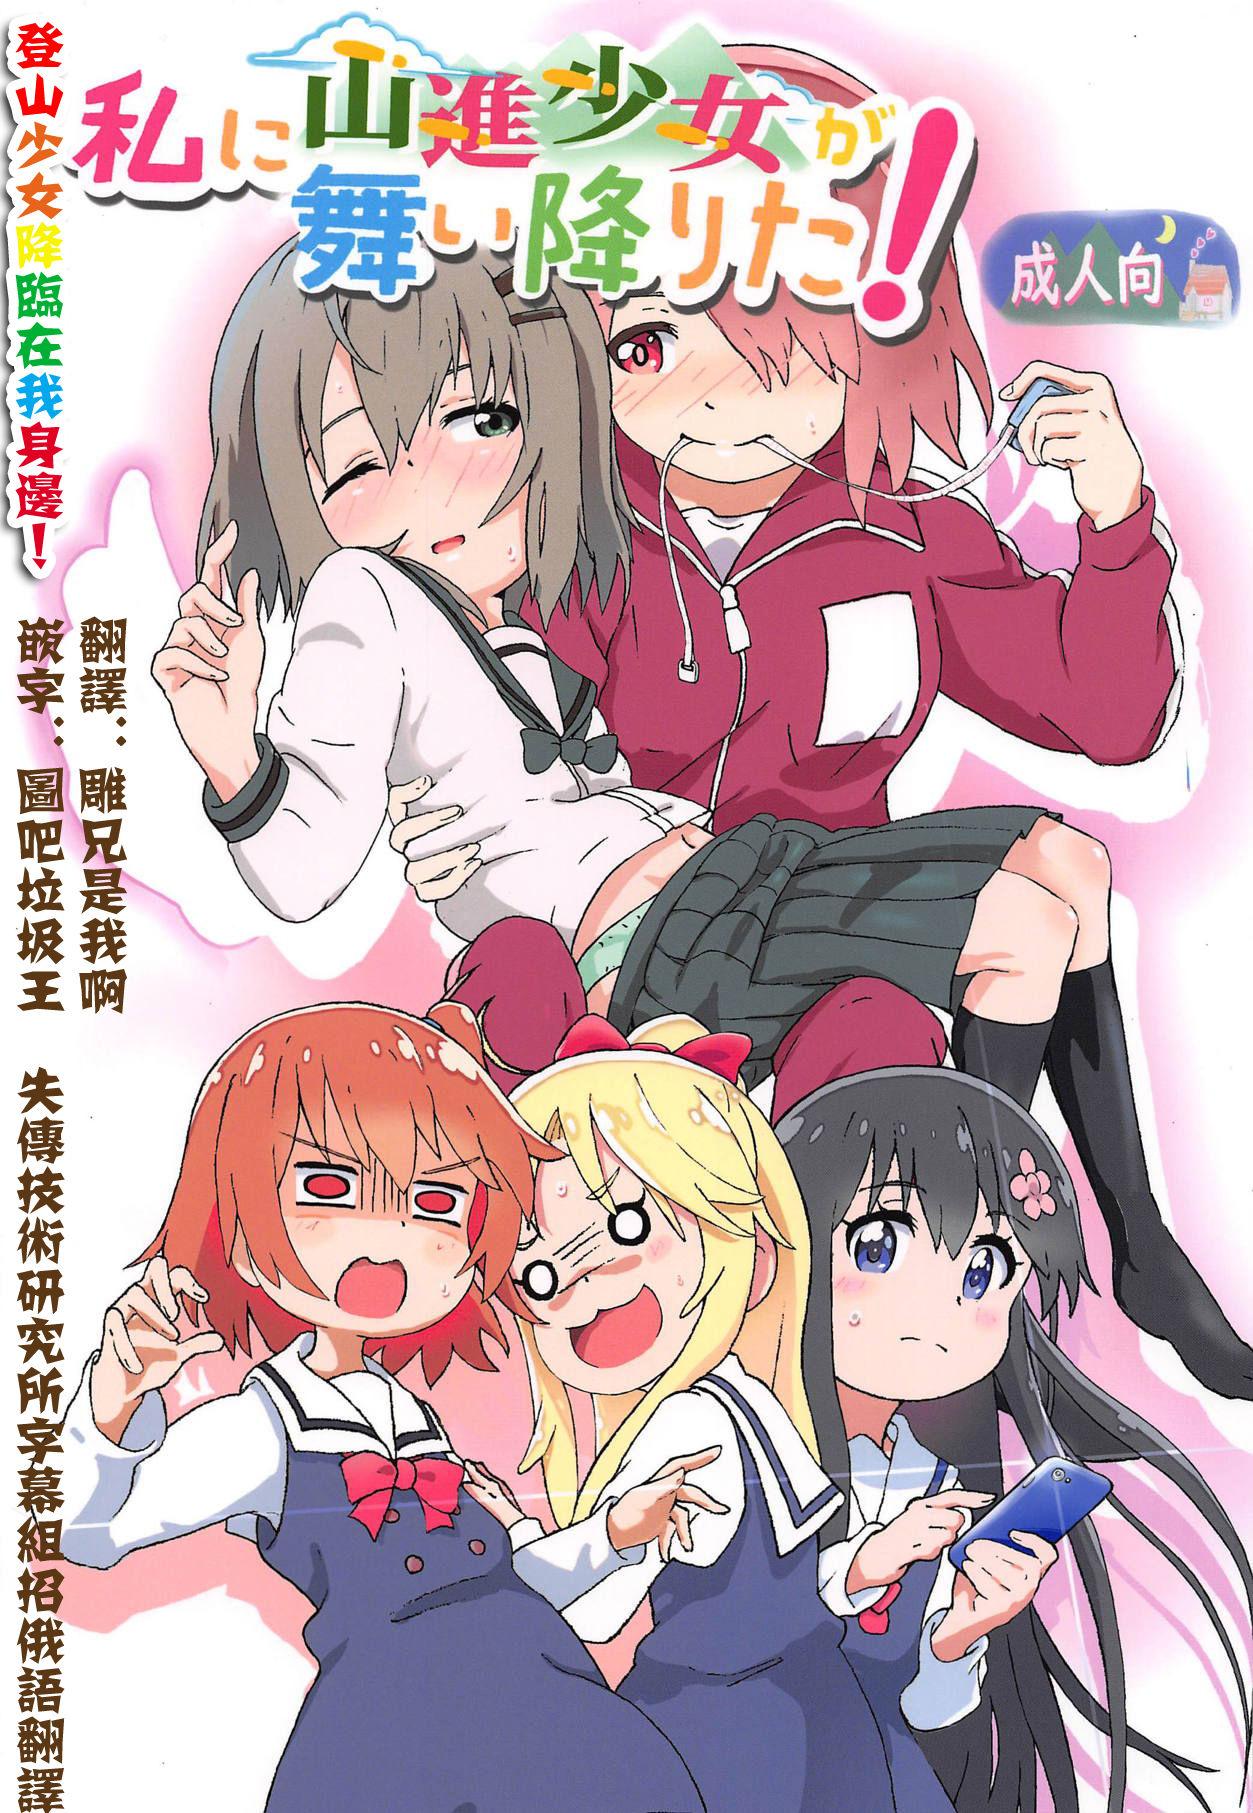 Free Rough Sex Porn Watashi ni Yama Susume Shoujo ga Maiorita! - Watashi ni tenshi ga maiorita Yama no susume Redhead - Page 1